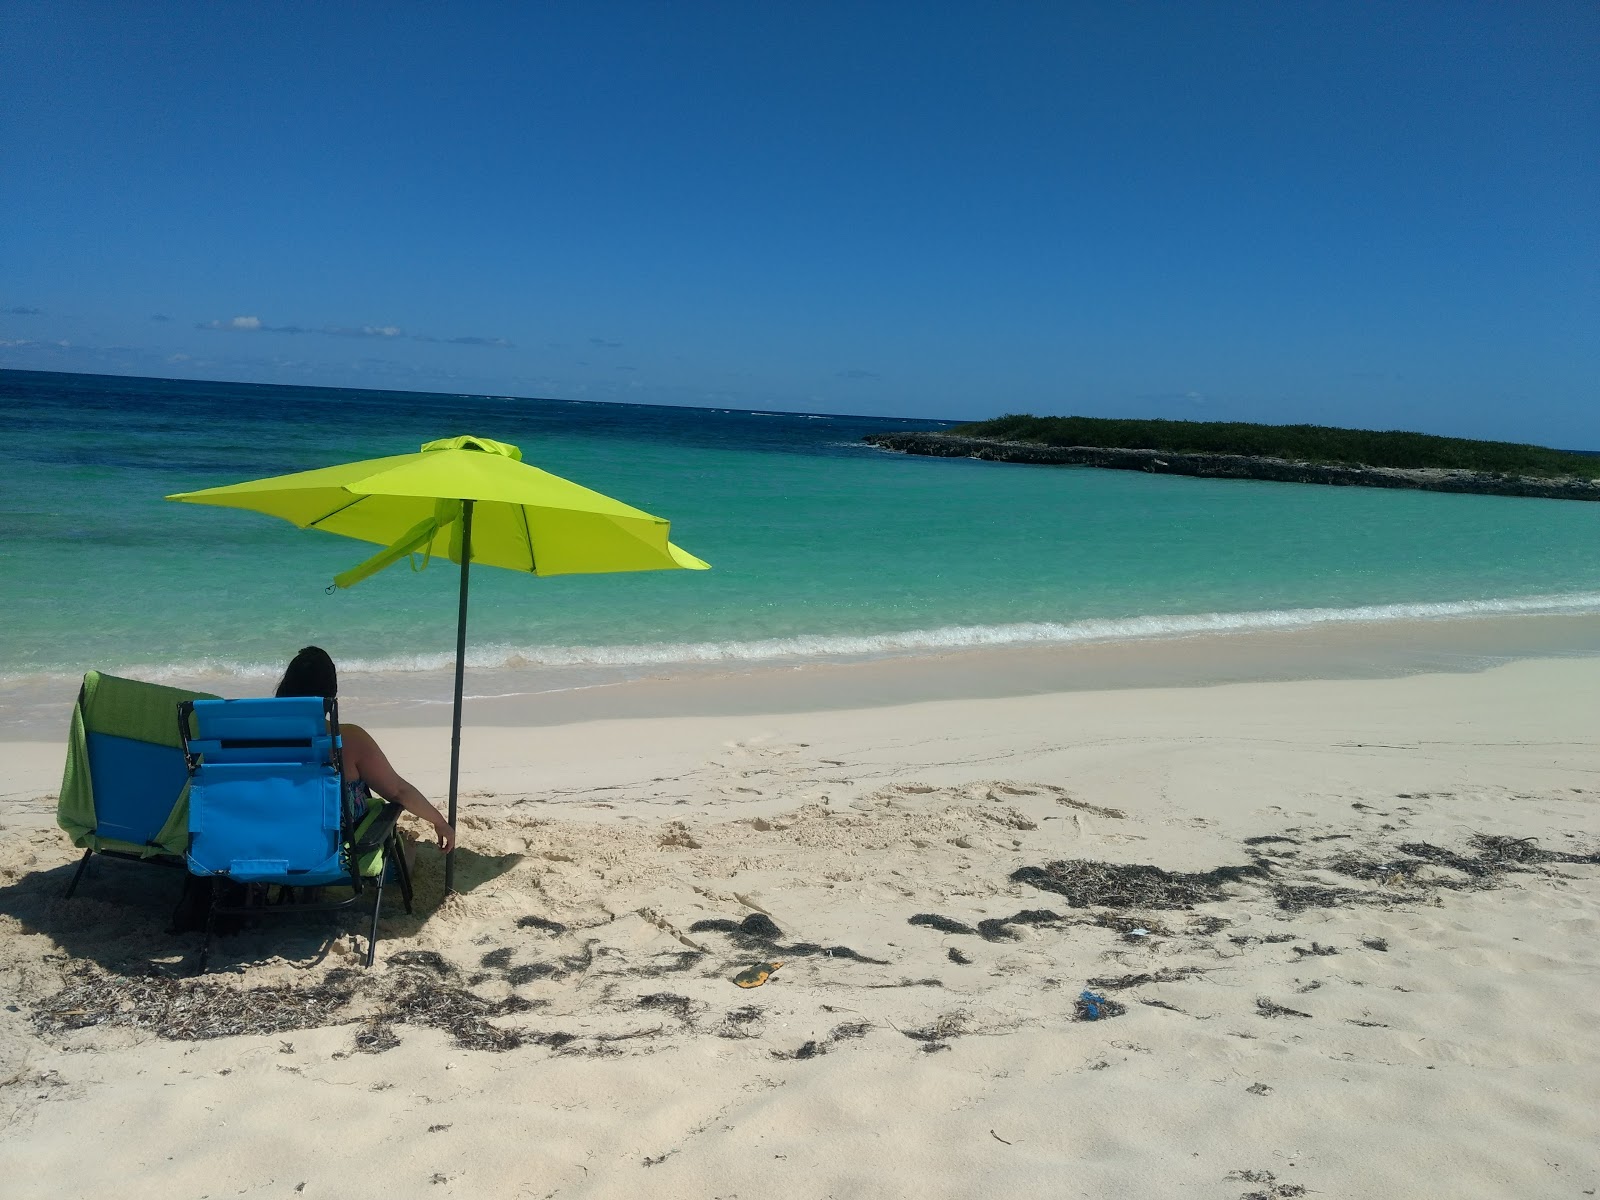 Zdjęcie French Leave beach - popularne miejsce wśród znawców relaksu